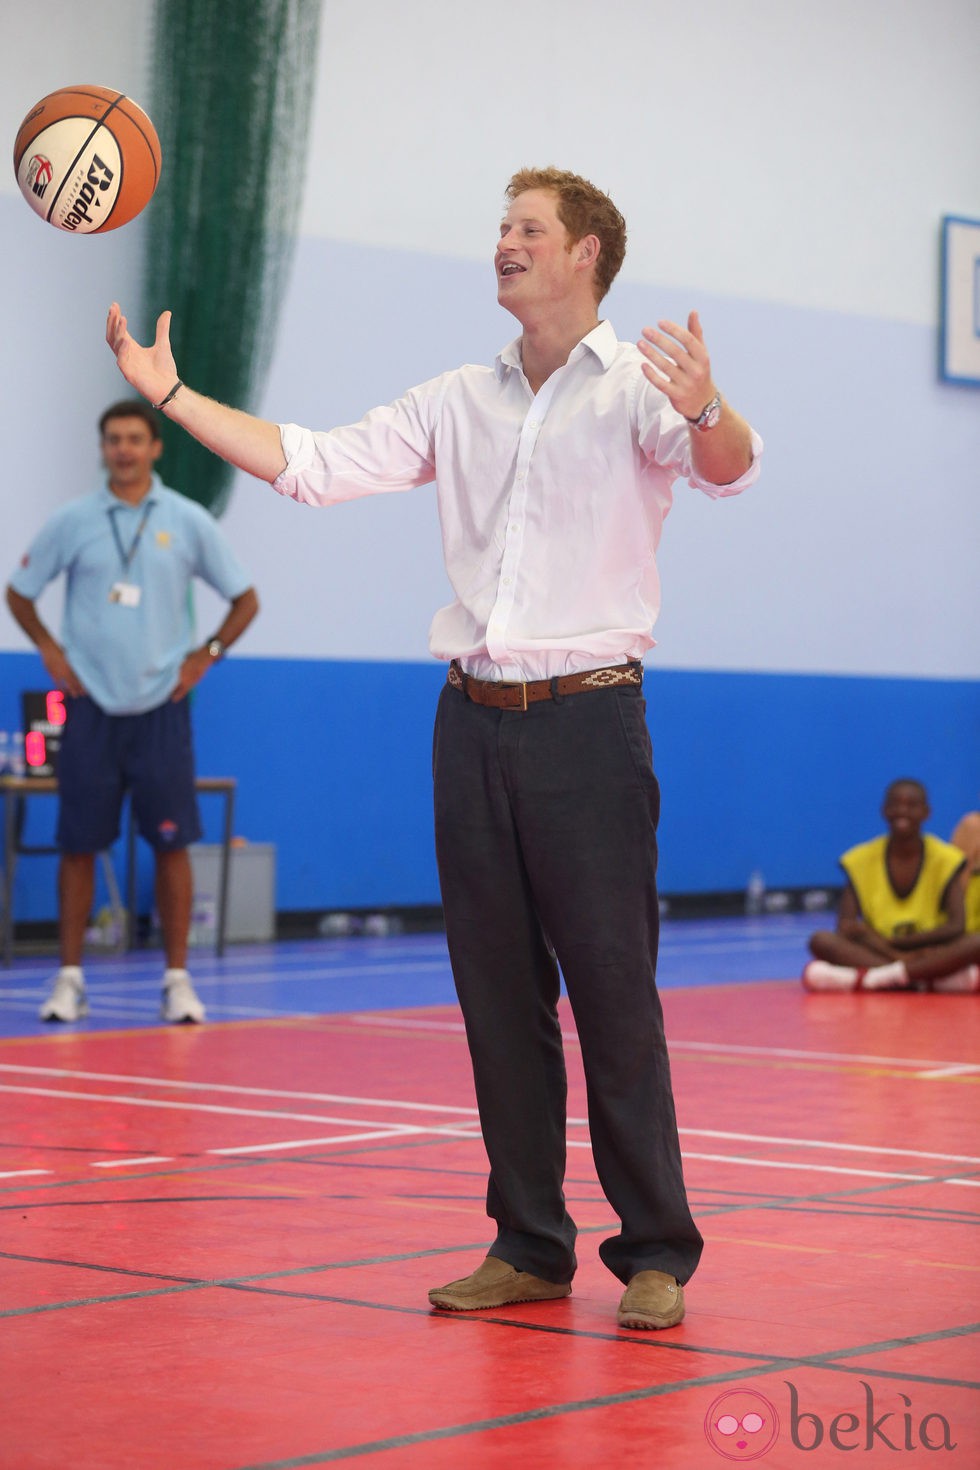 El Príncipe Harry jugando al baloncesto